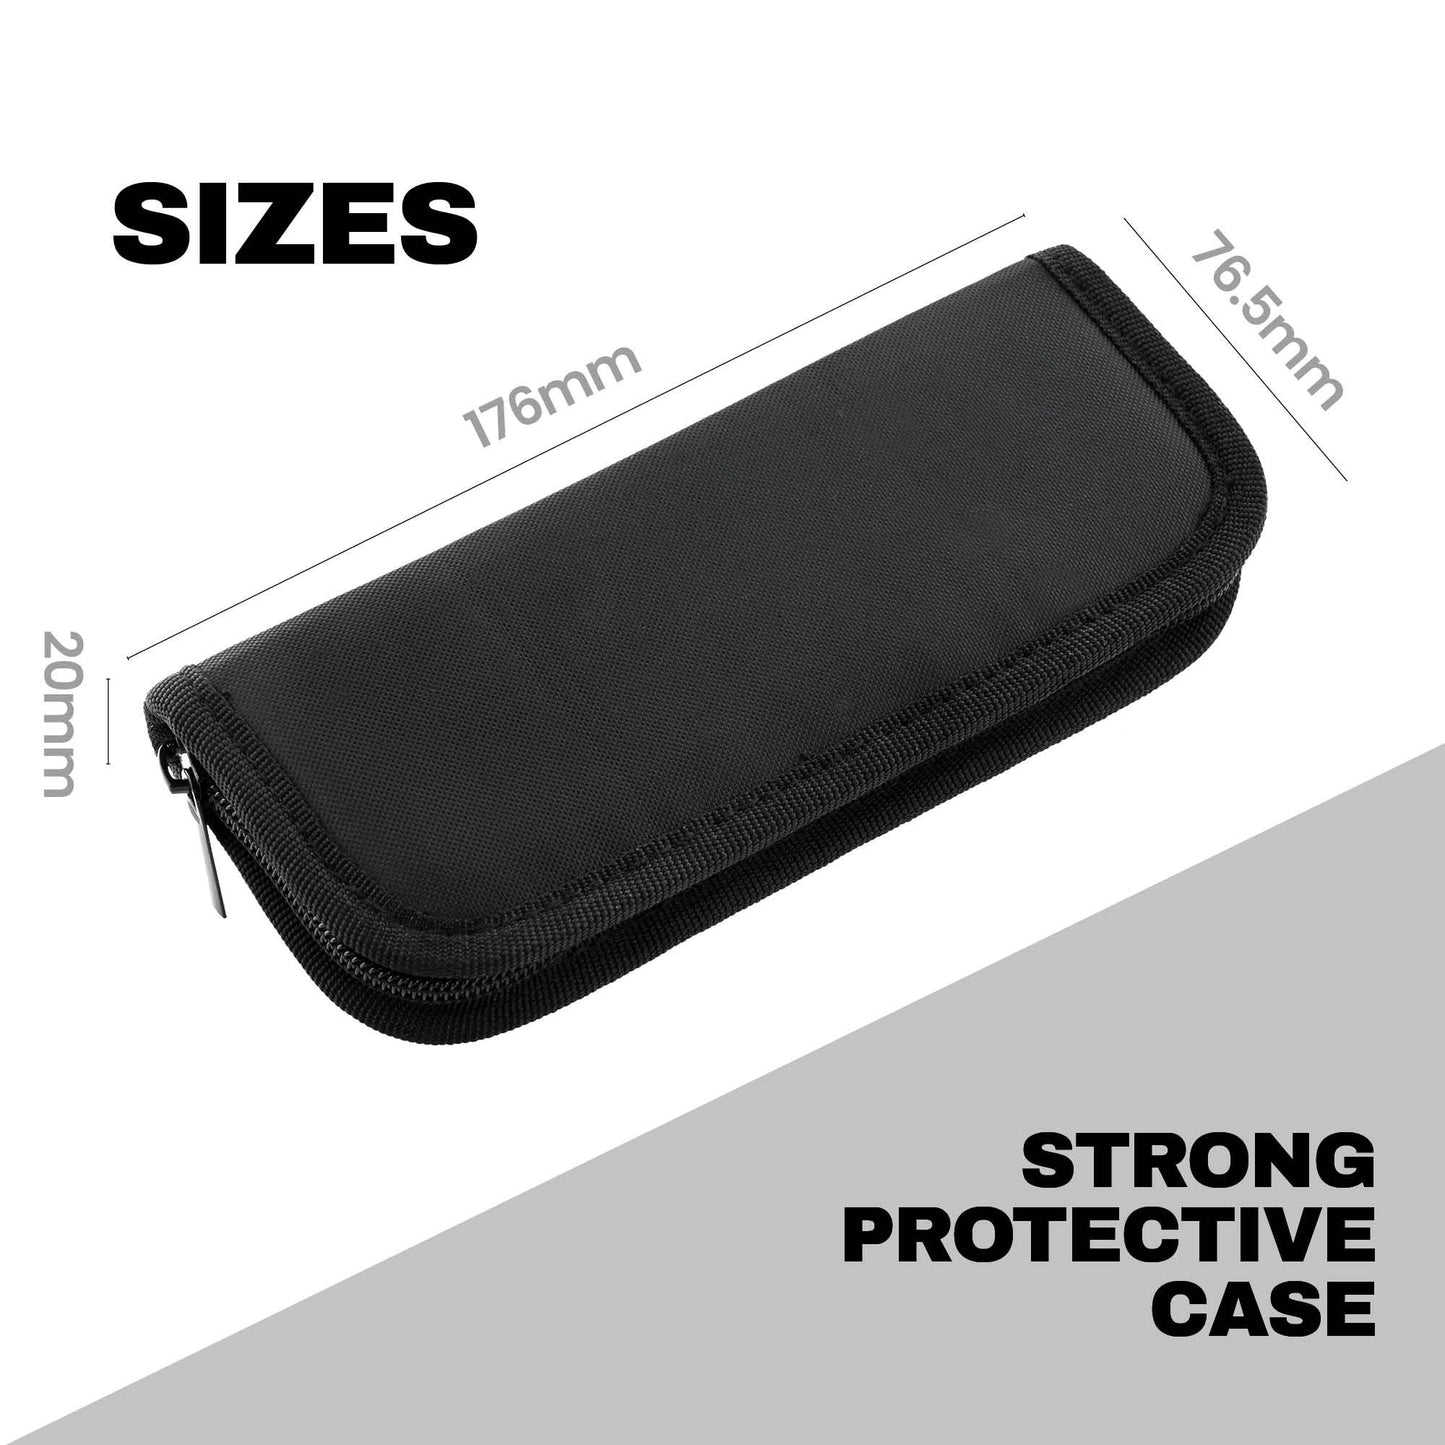 Designa Fortex Dart Case - Strong Protective